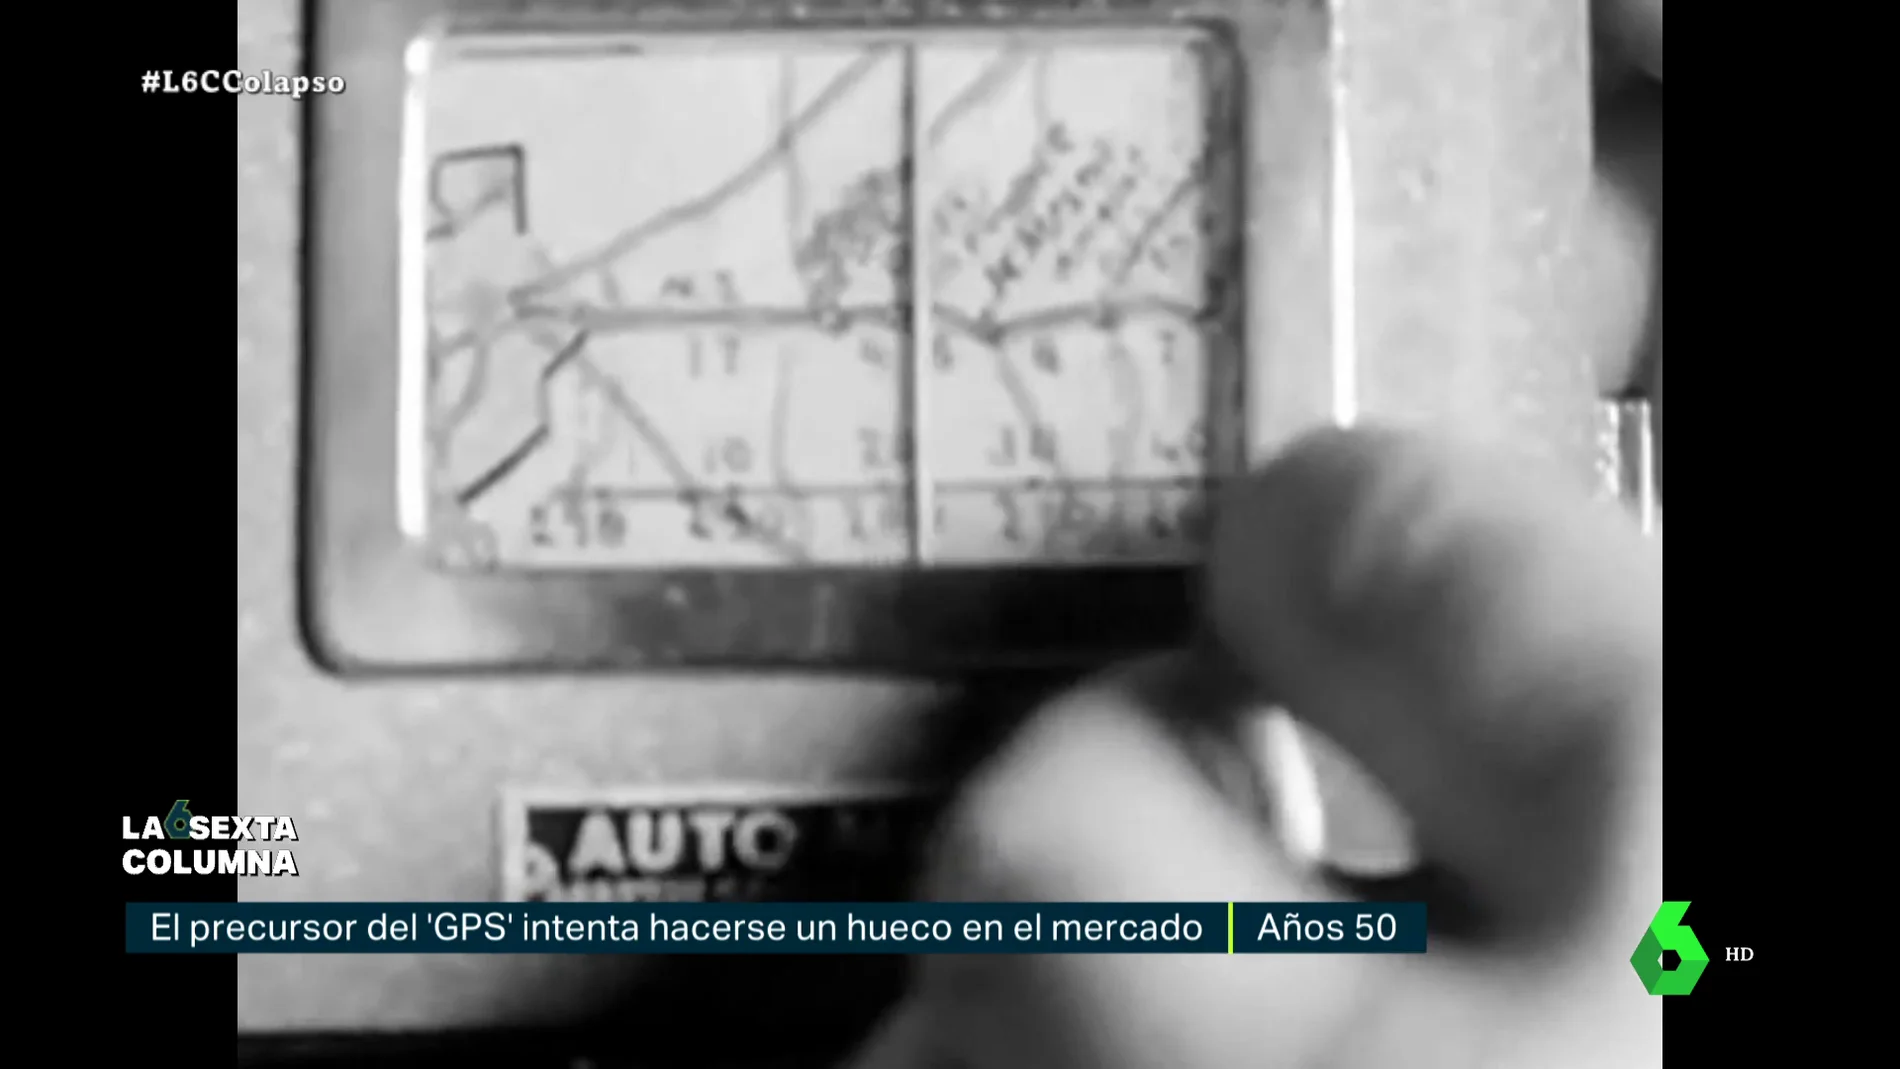 Un ingeniero leonés, el precursor del GPS en los años 50 con el automapa